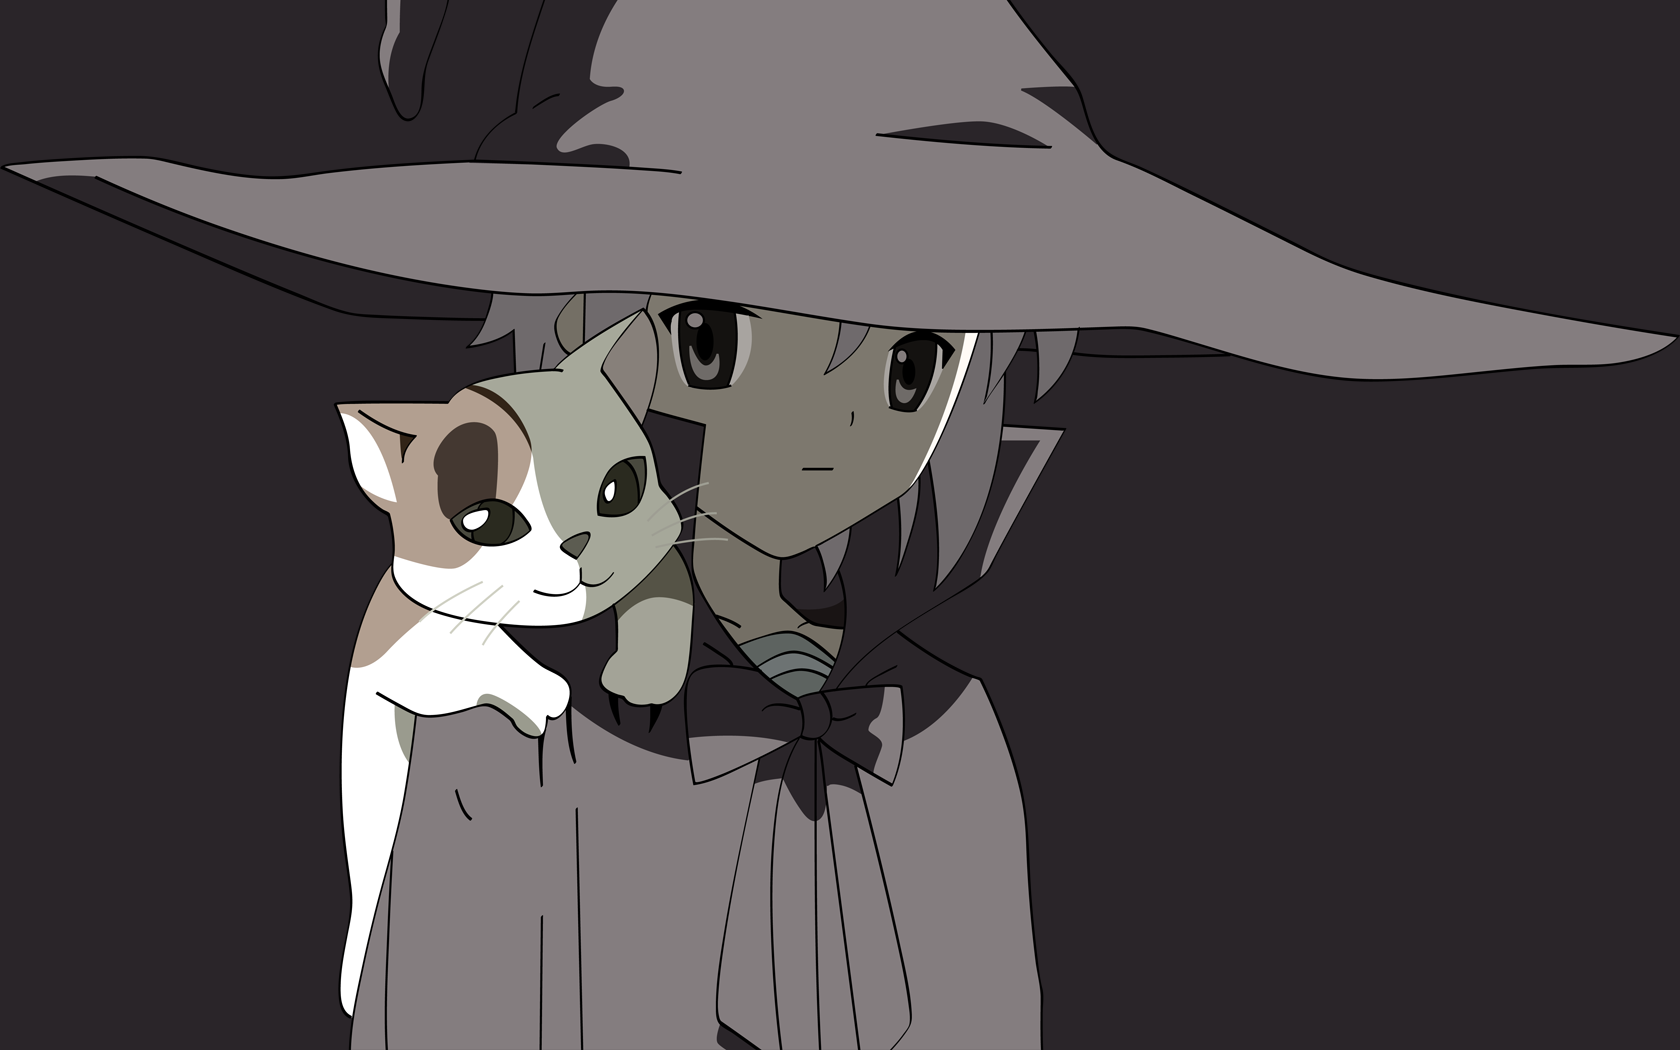 Anime 1680x1050 The Melancholy of Haruhi Suzumiya anime girls Nagato Yuki anime witch hat simple background cats